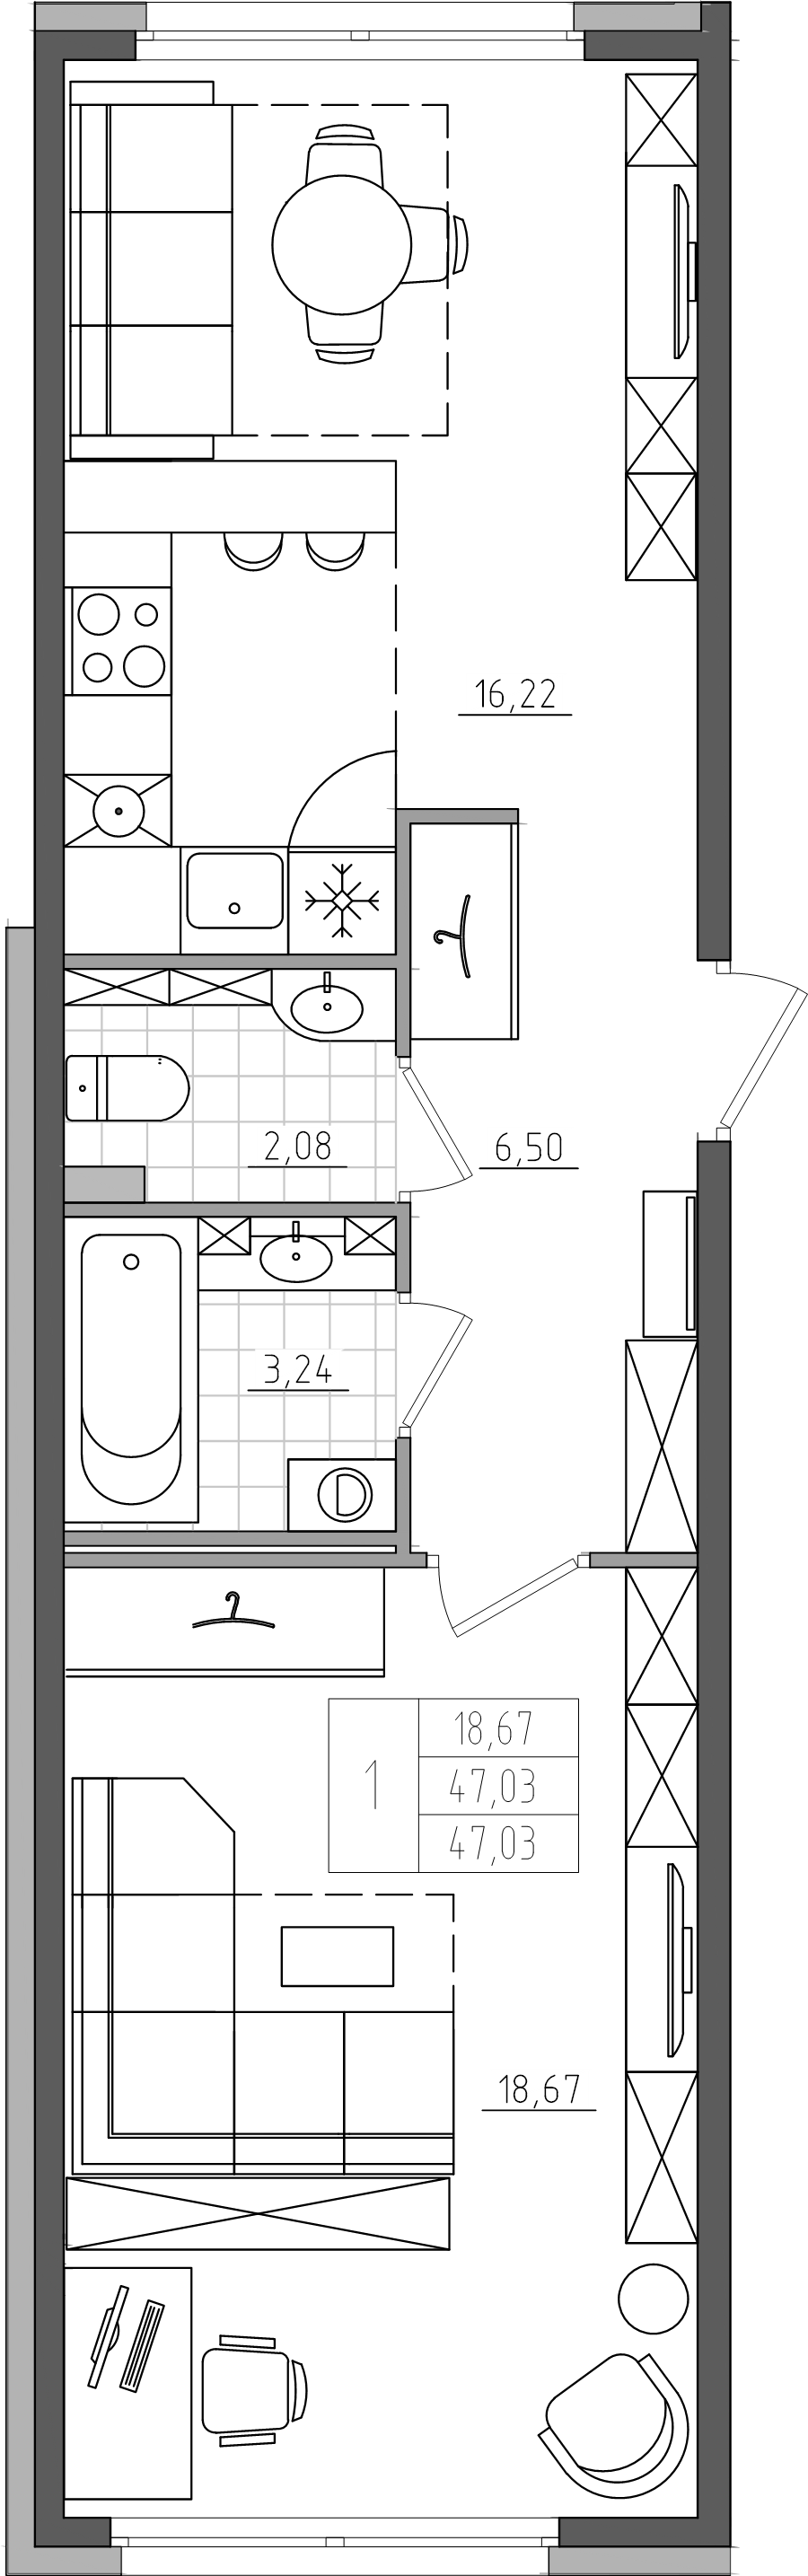 2-комнатная (Евро) квартира, 47.03 м² в ЖК "Дом на Прилукской" - планировка, фото №1